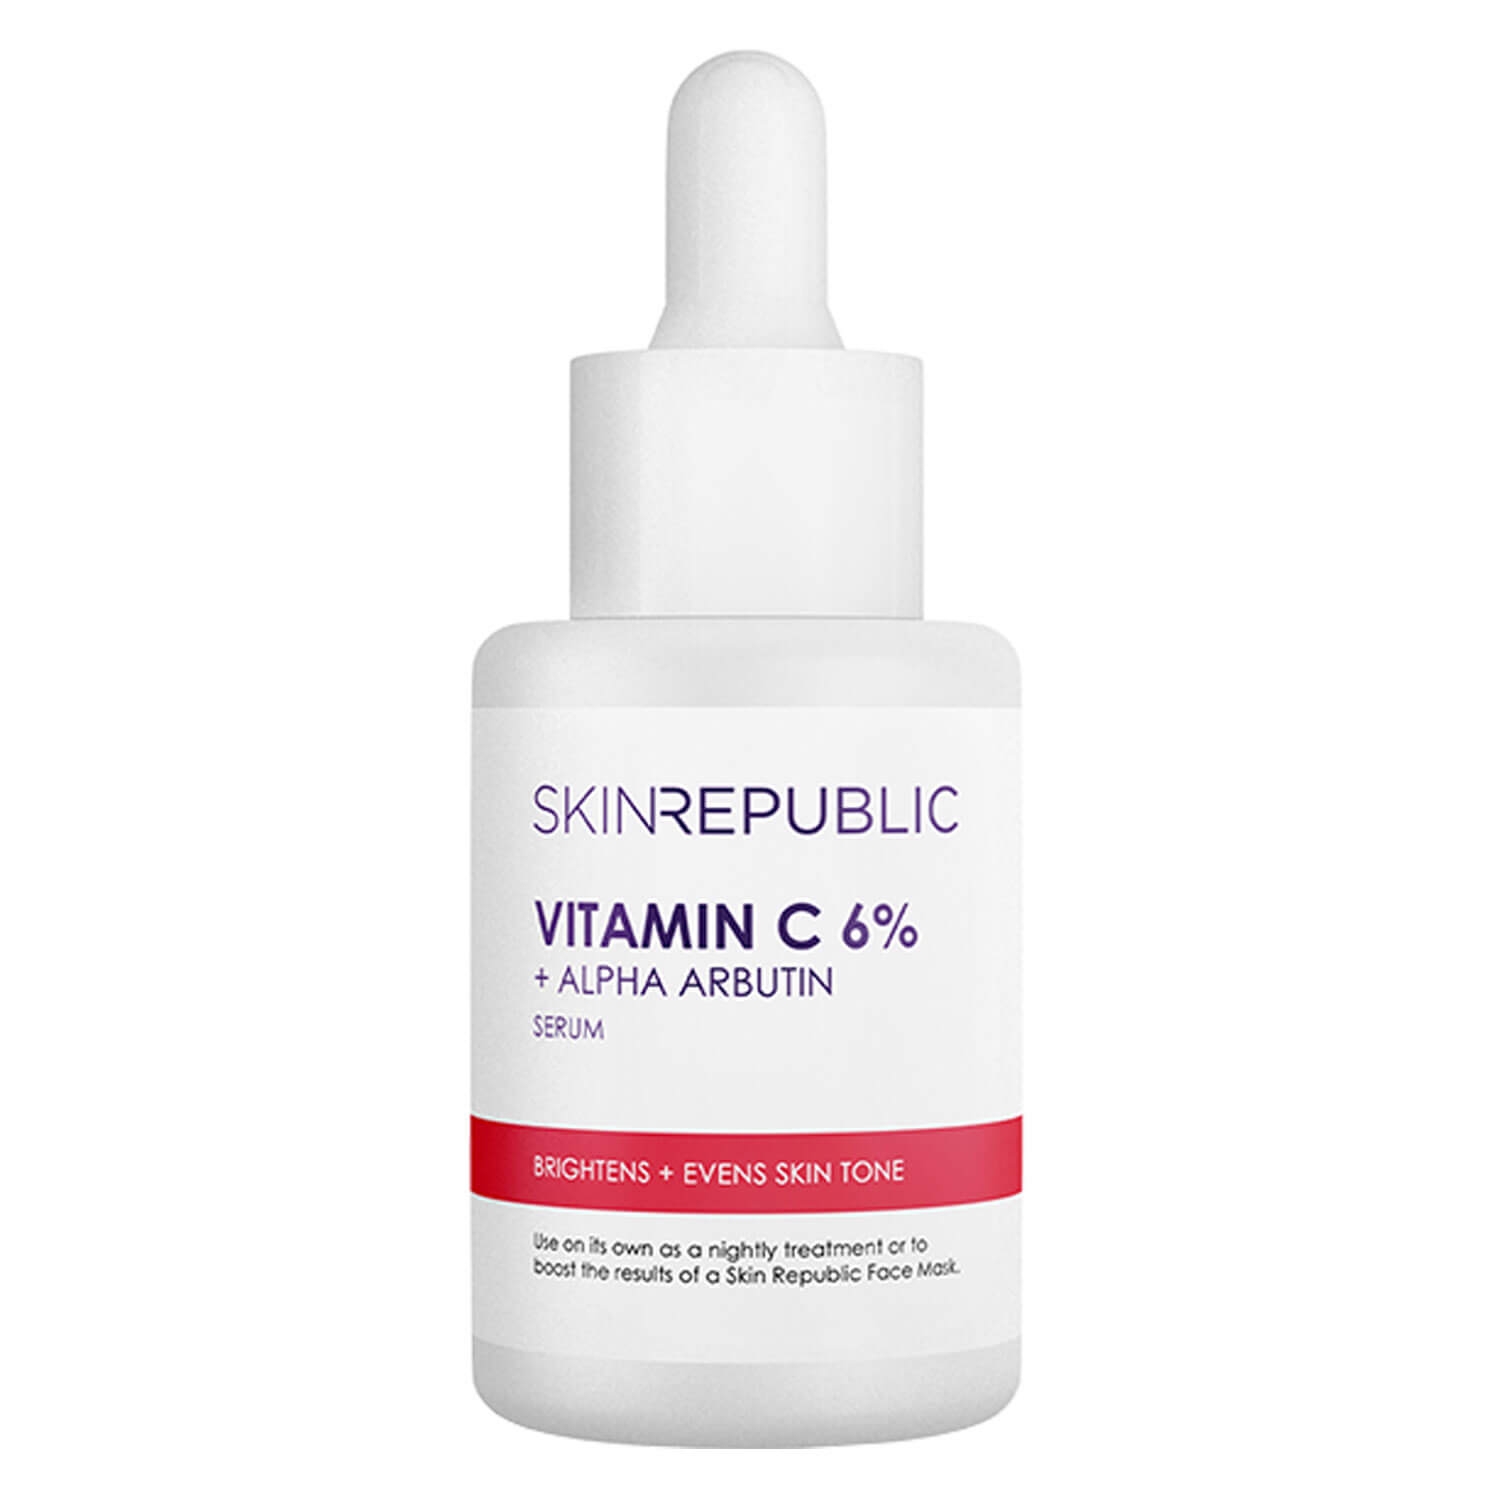 Produktbild von Skin Republic - Vitamin C 6% + Alpha Arbutin Serum